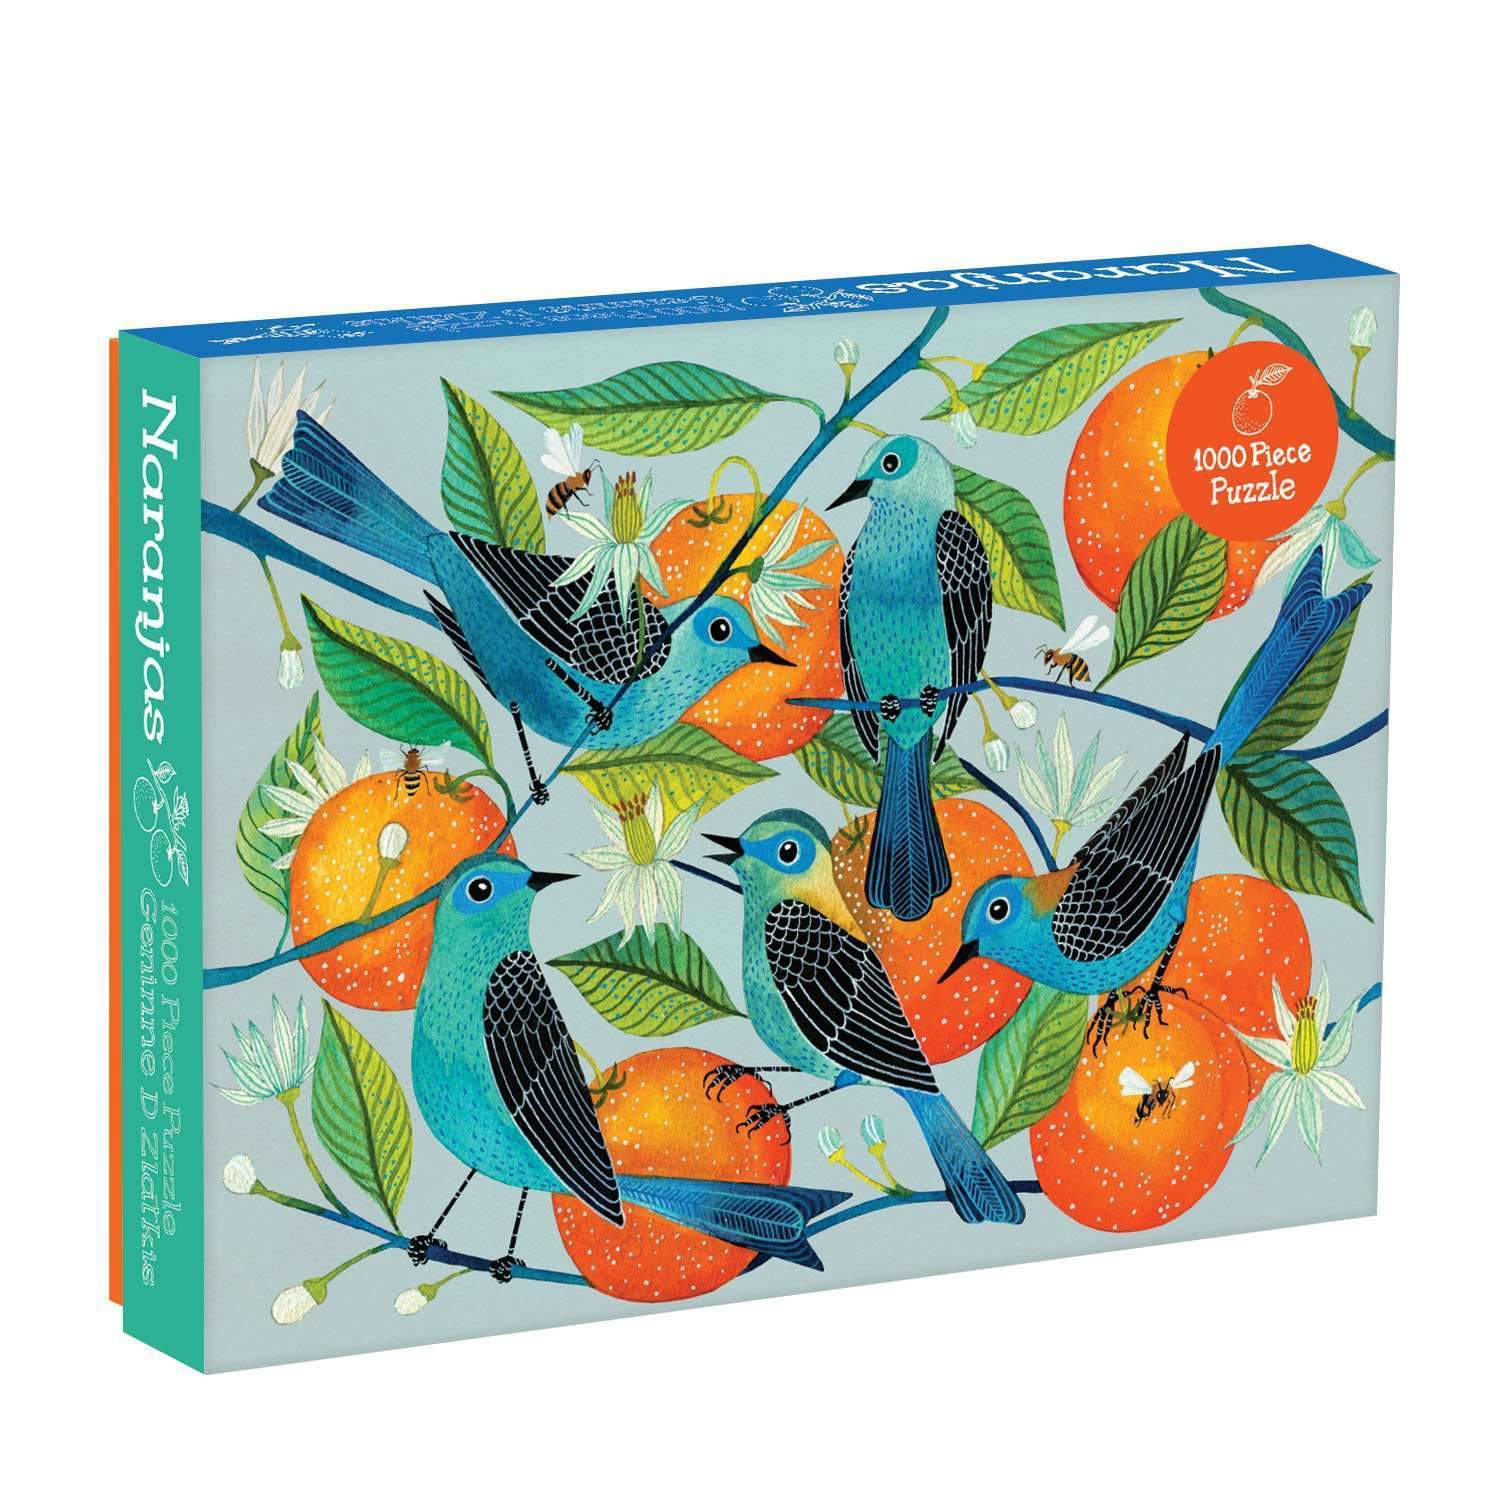 Avian Friends 1000 Piece Puzzle – Galison